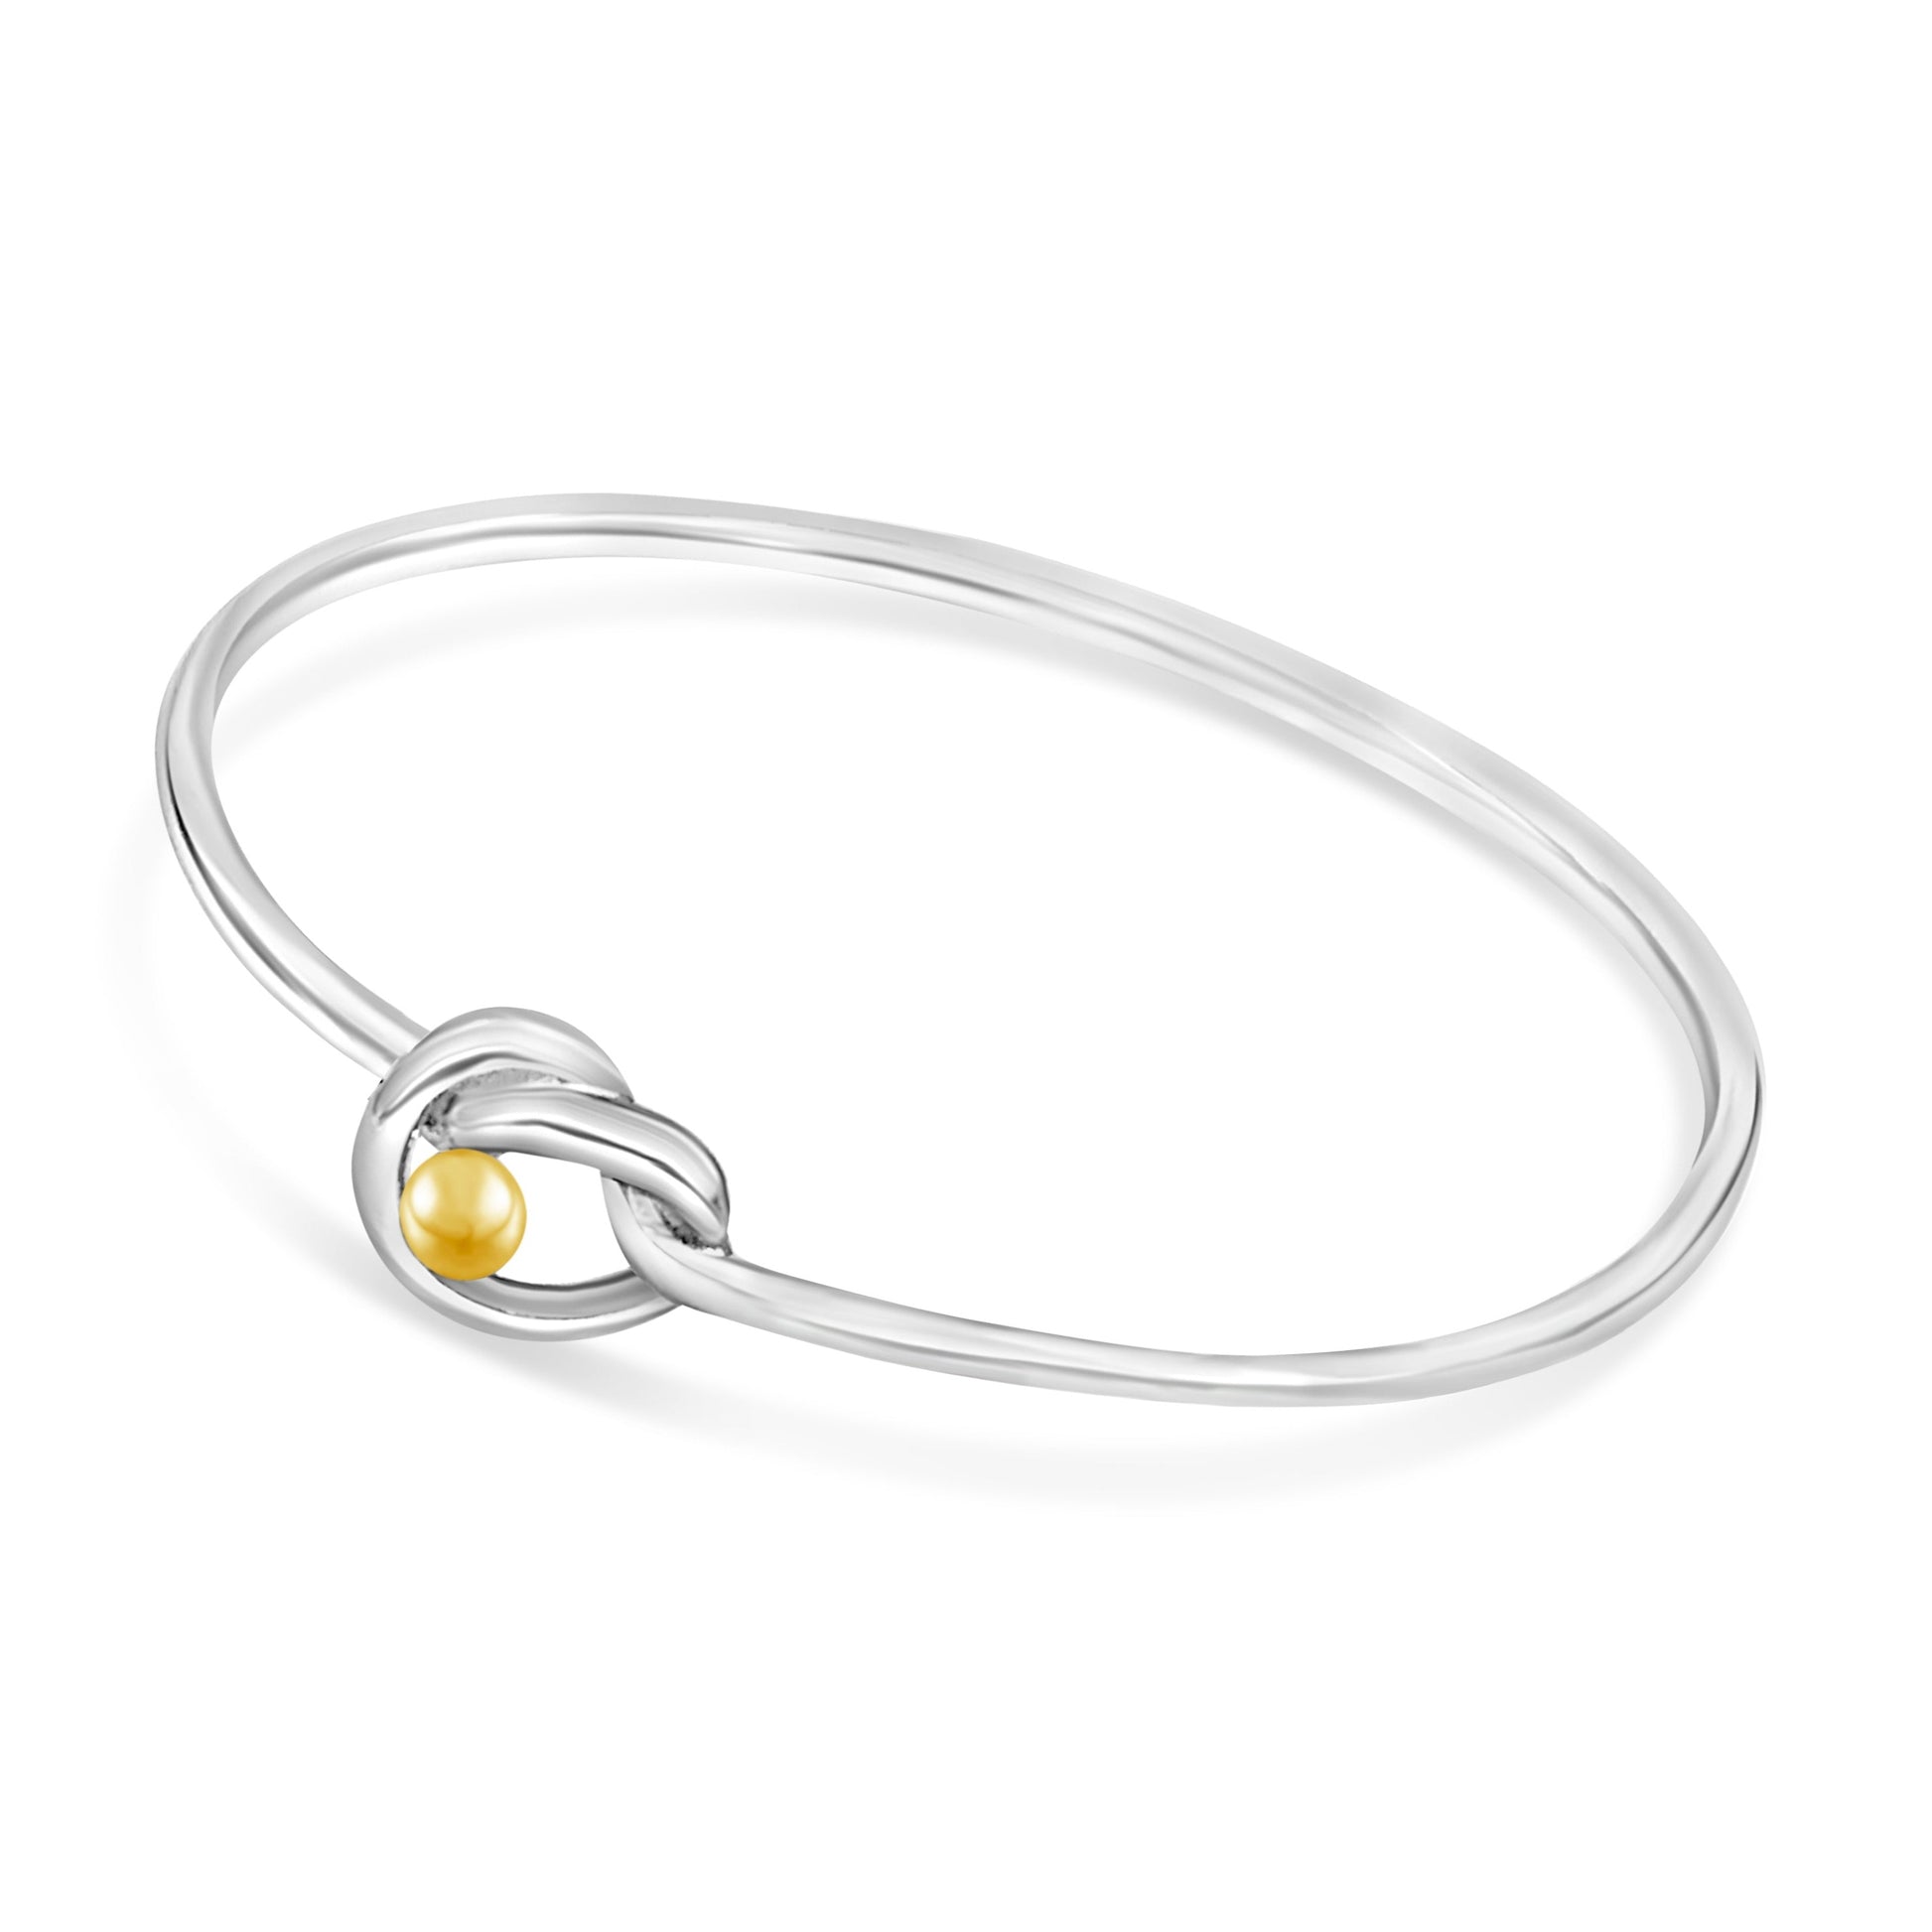 Knot Light Silver bracelet with Swarovski Beads ⋆ Hope Lace Design